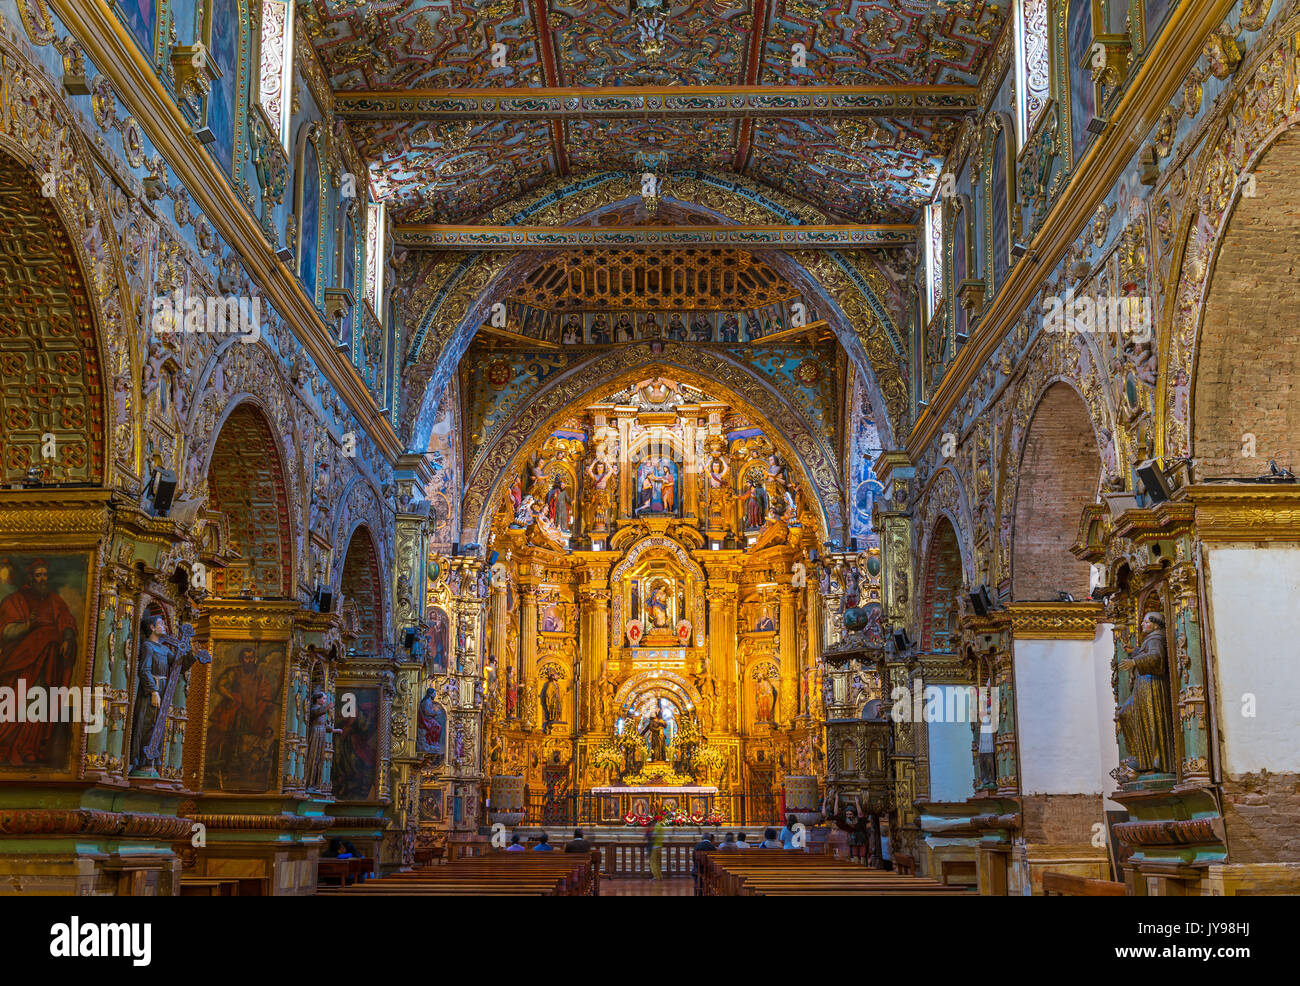 Die barocken Stil und Blattgold verziert Altar des Heiligen Franziskus Kirche und Kloster in der Altstadt von Quito, Ecuador. Stockfoto